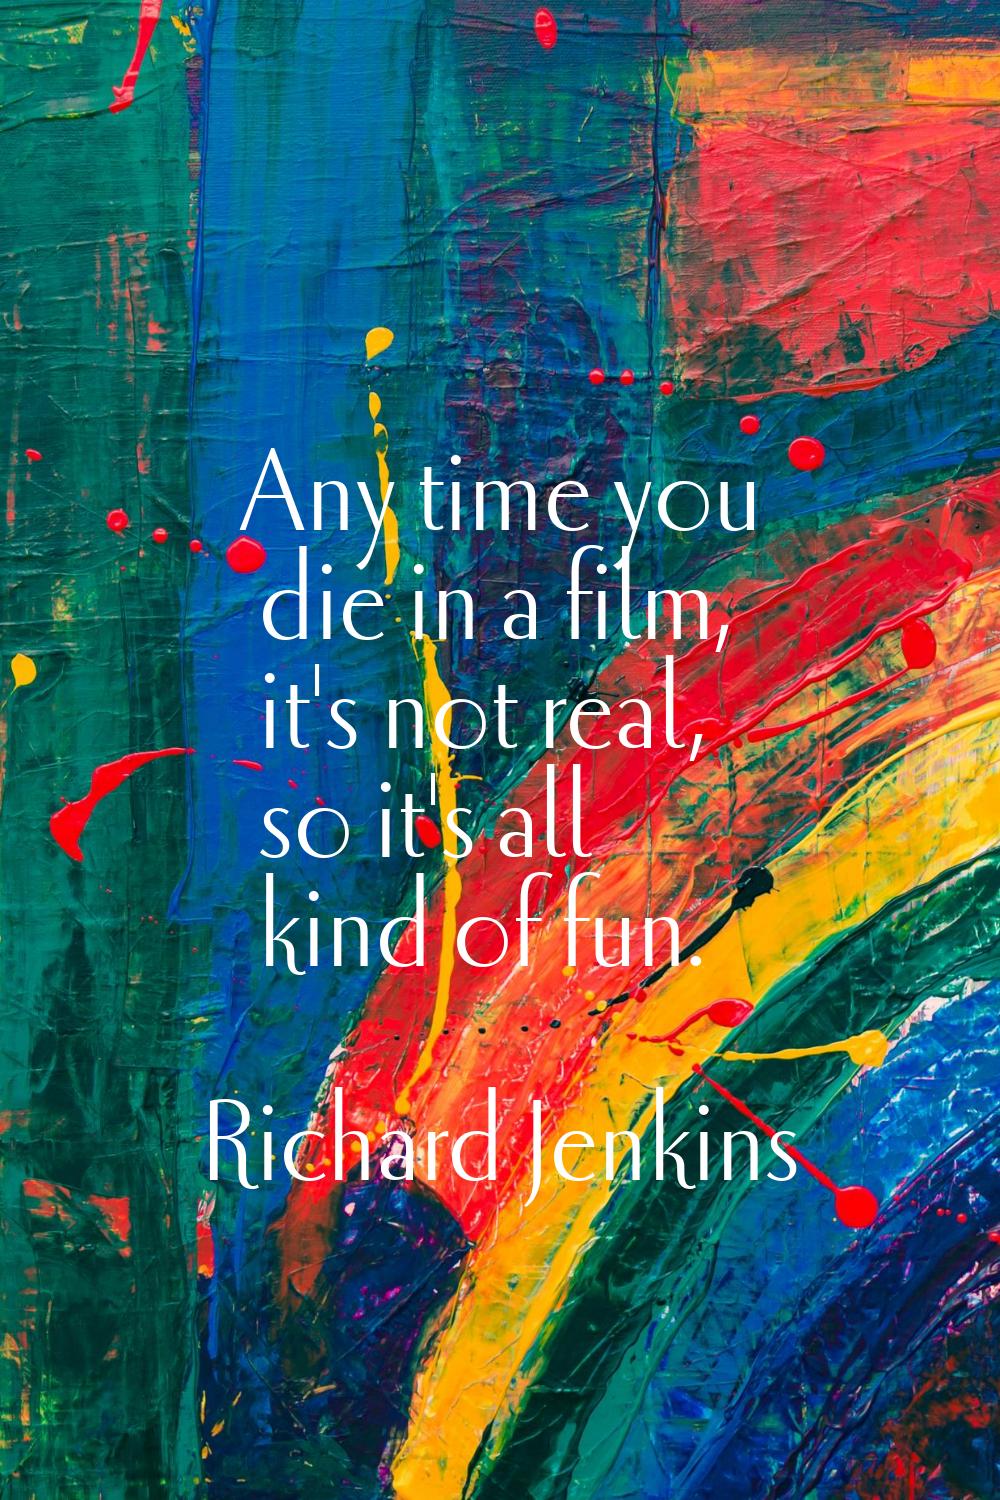 Any time you die in a film, it's not real, so it's all kind of fun.